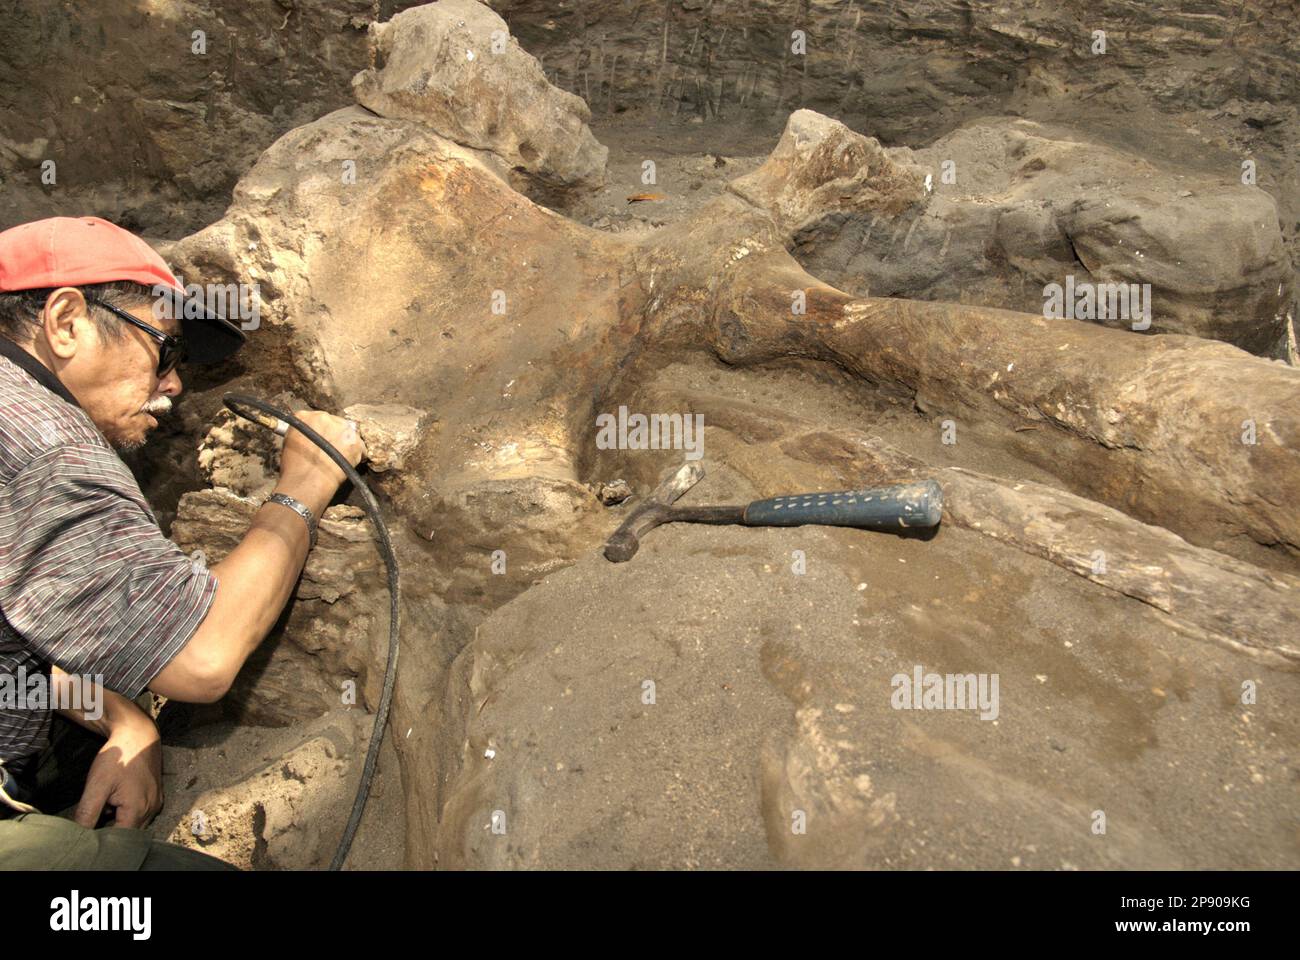 Fachroel Aziz, professeur de recherche en paléontologie des vertébrés, est photographié alors qu'il travaille sur le site d'excavation d'Elephas hysudrindicatus, une espèce d'éléphant disparue vécue pendant l'époque du Pléistocène, plus tard connue sous le nom de 'éléphant de Blora'—à Sunggun, Mendalem, Kradenan, Blora, Central Java, Indonésie. Au cours des fouilles, une équipe de scientifiques de la recherche sur les vertébrés (Agence géologique, Ministère indonésien de l'énergie et des ressources minérales), dirigée par les paléontologues Iwan Kurniawan et Fachroel Aziz, a découvert les os de l'espèce presque entièrement (environ 90 pour cent) qui plus tard... Banque D'Images